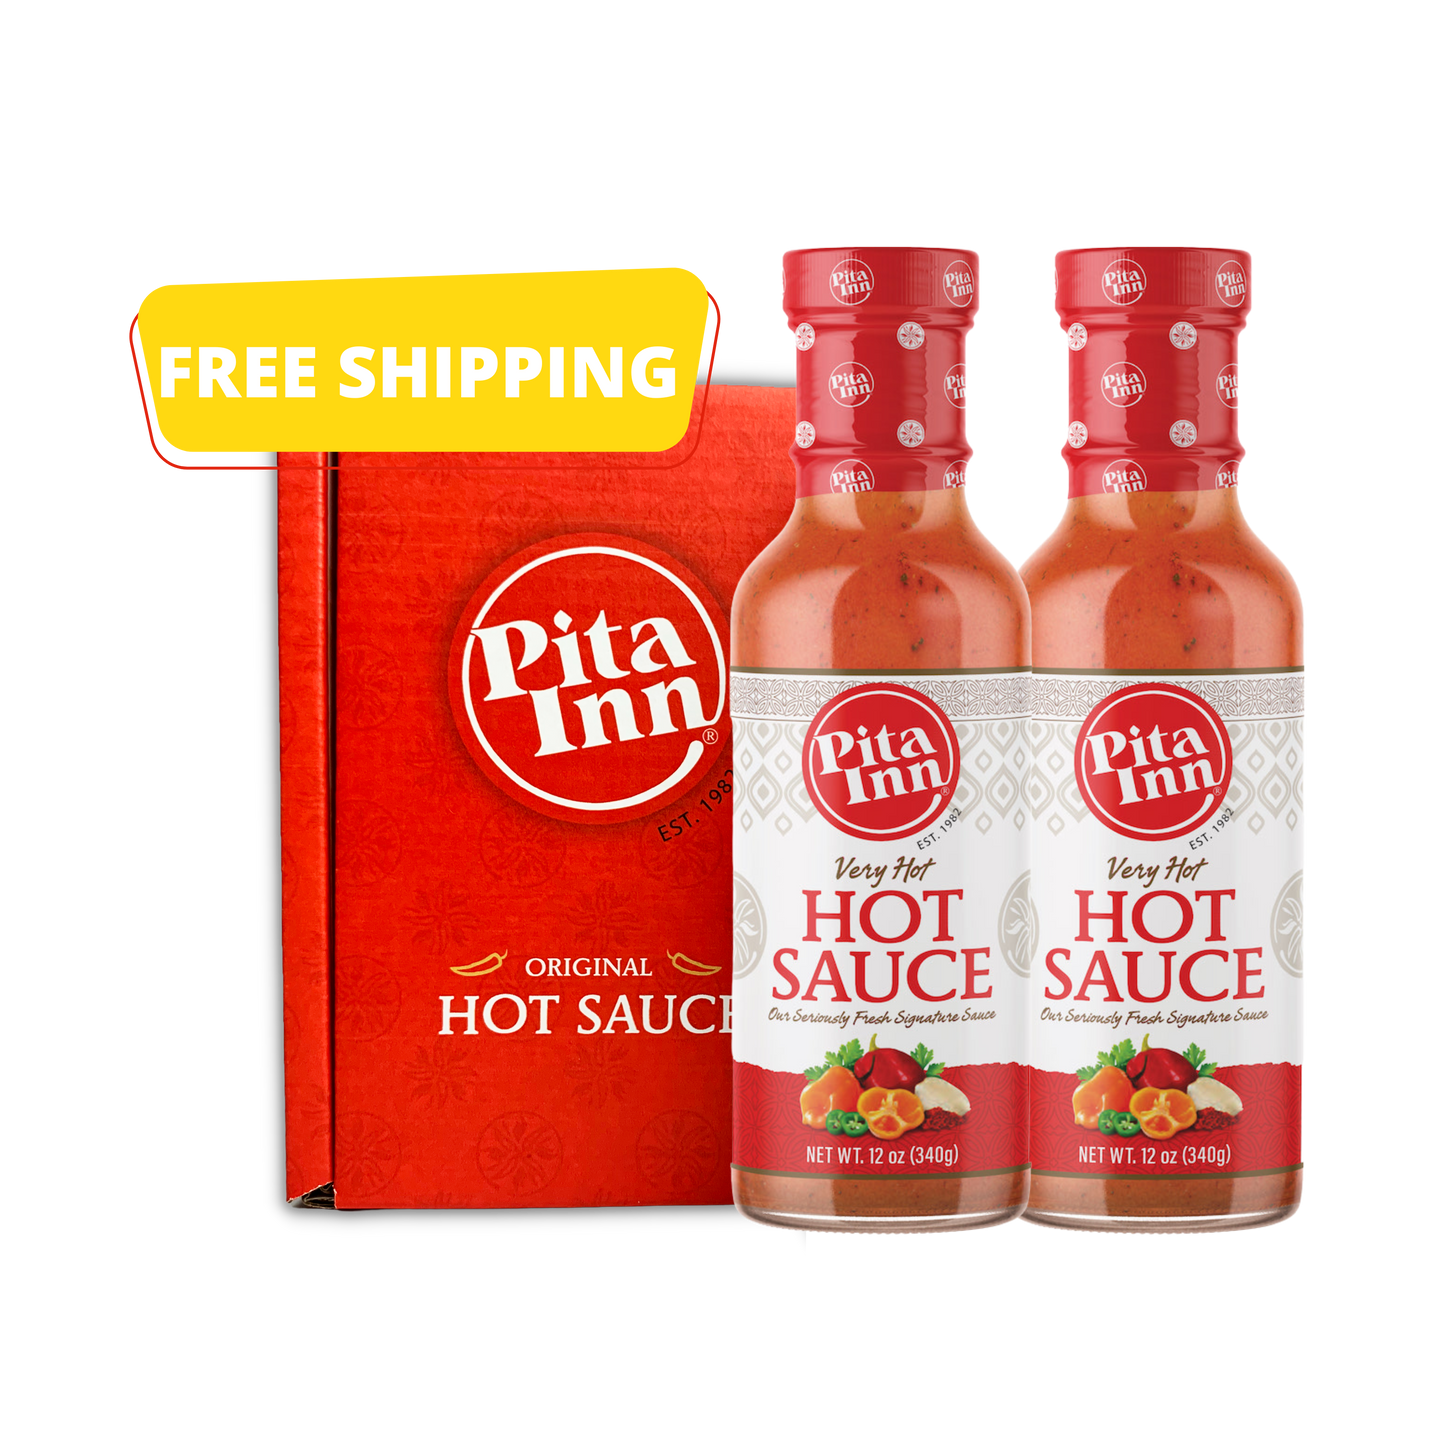 Pita Inn Very Hot, Hot Sauce Gift Box